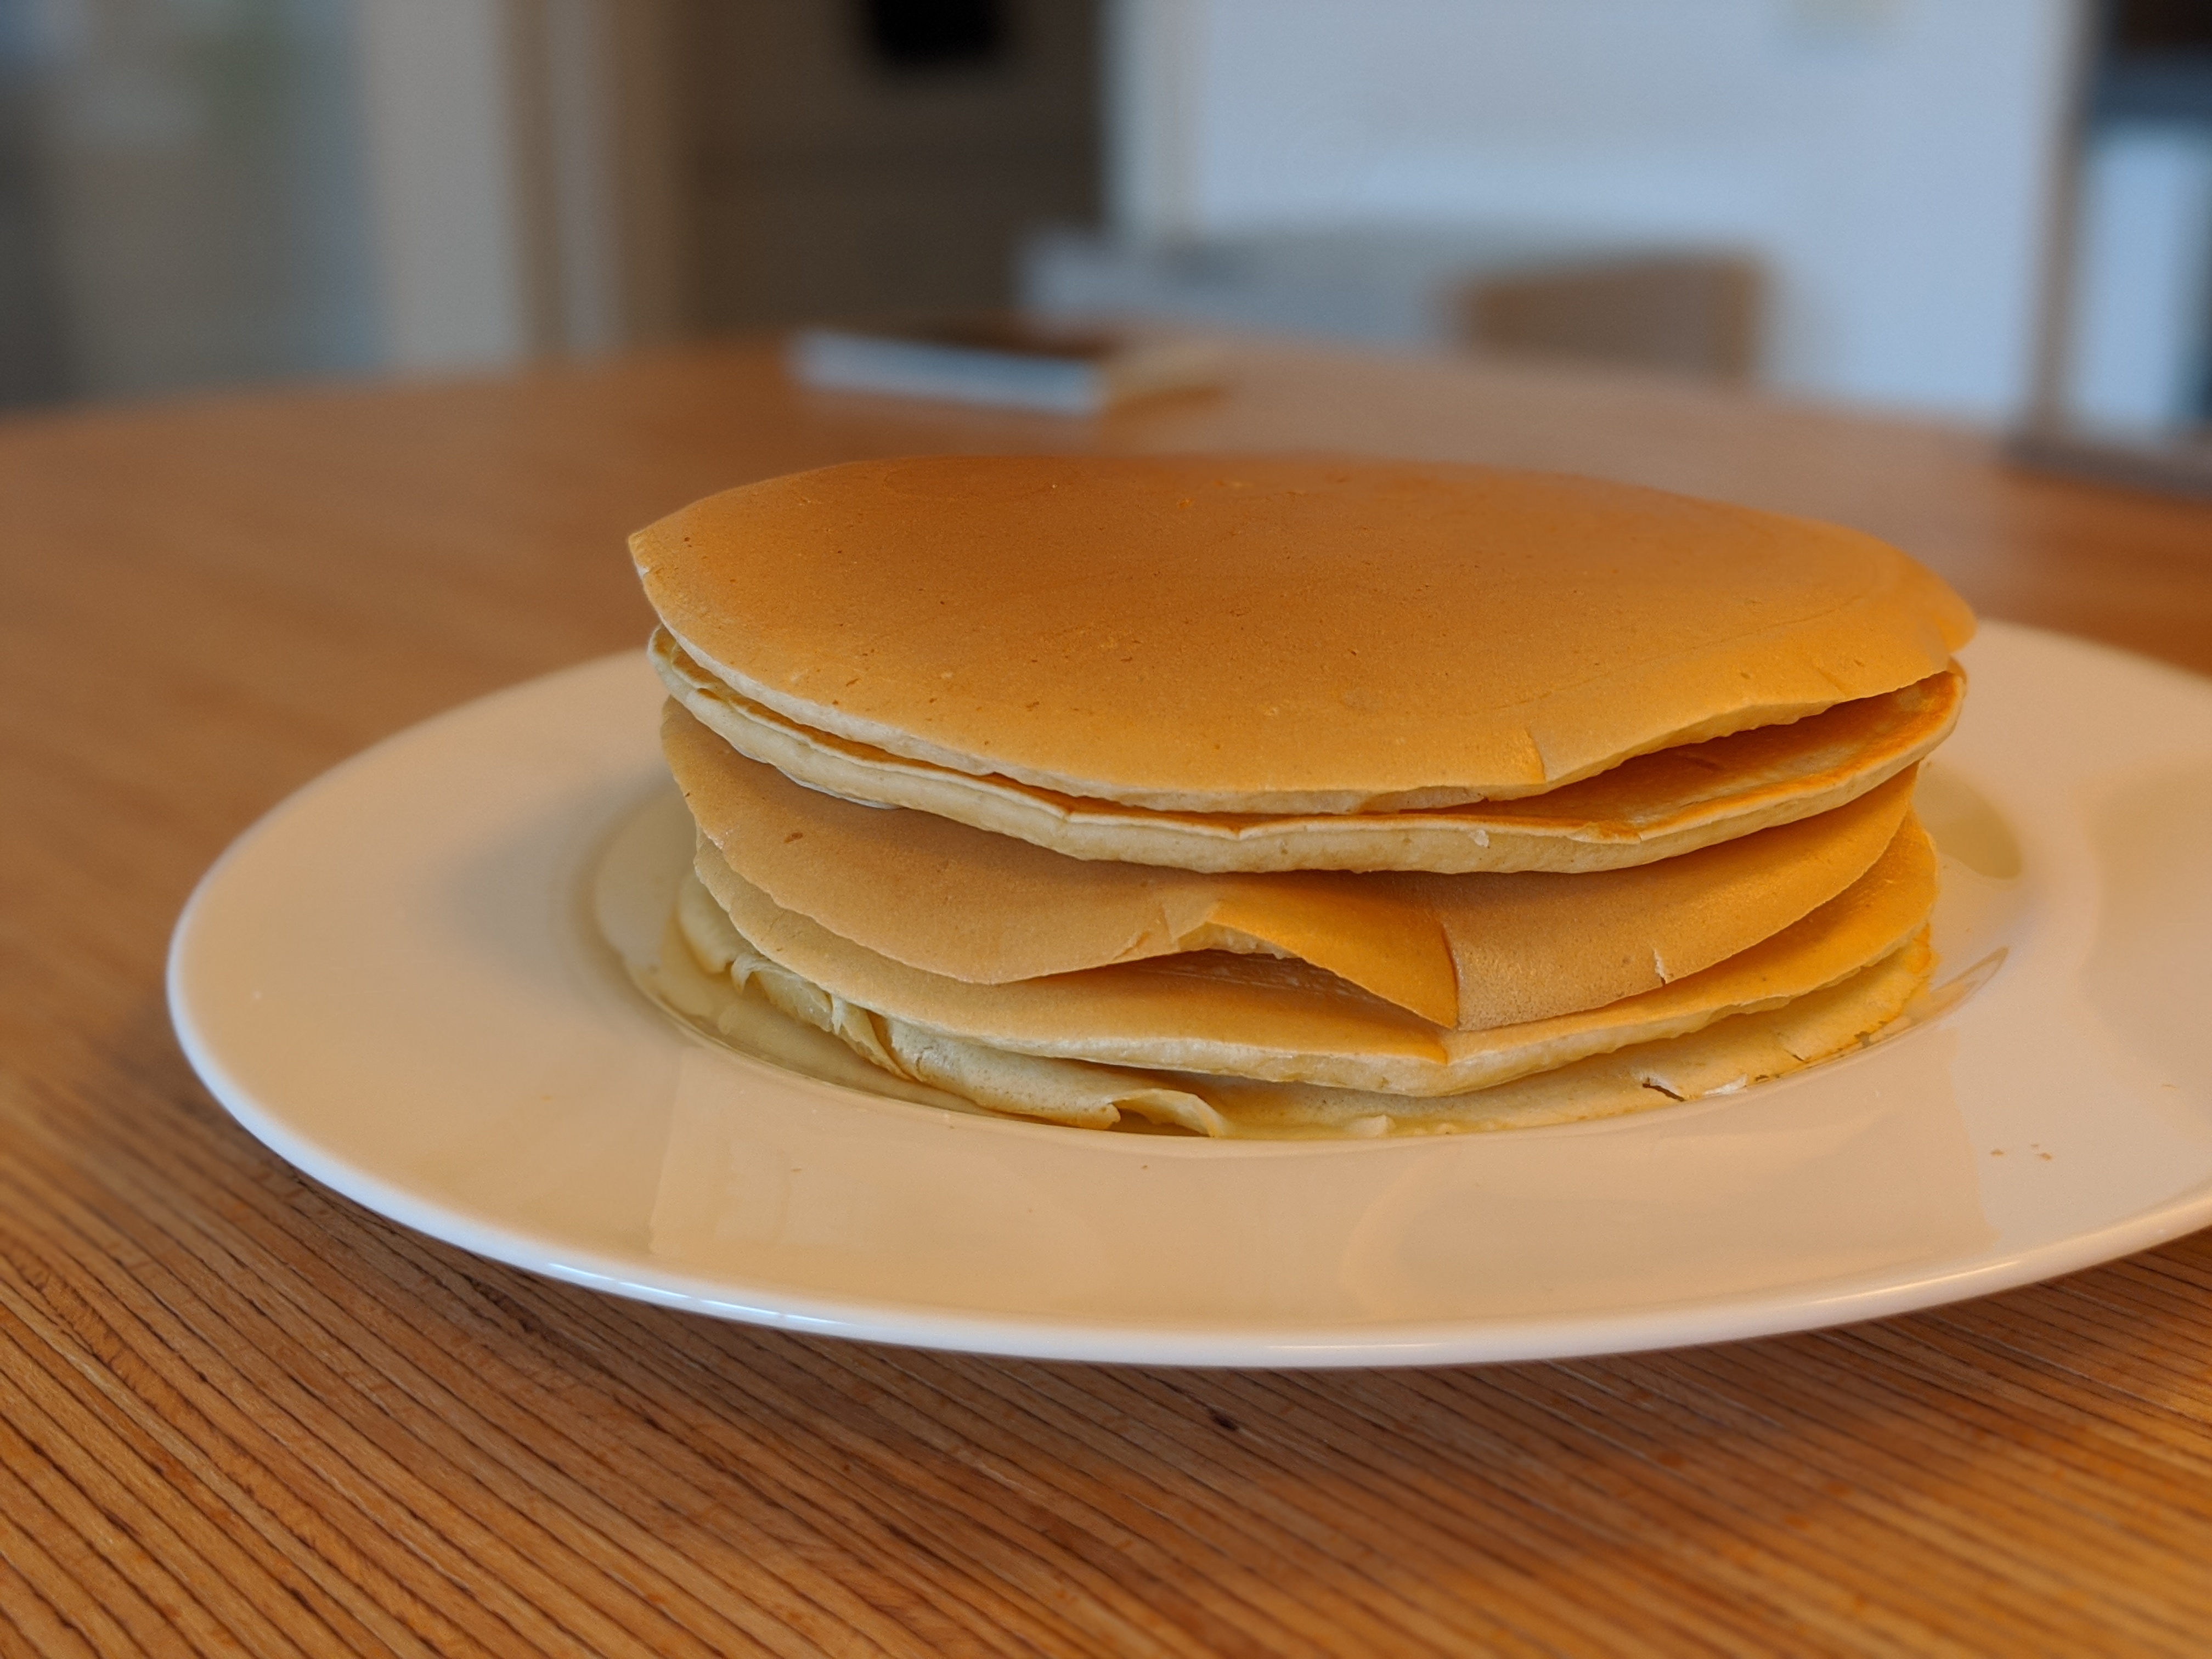 Cómo se hacen pancakes